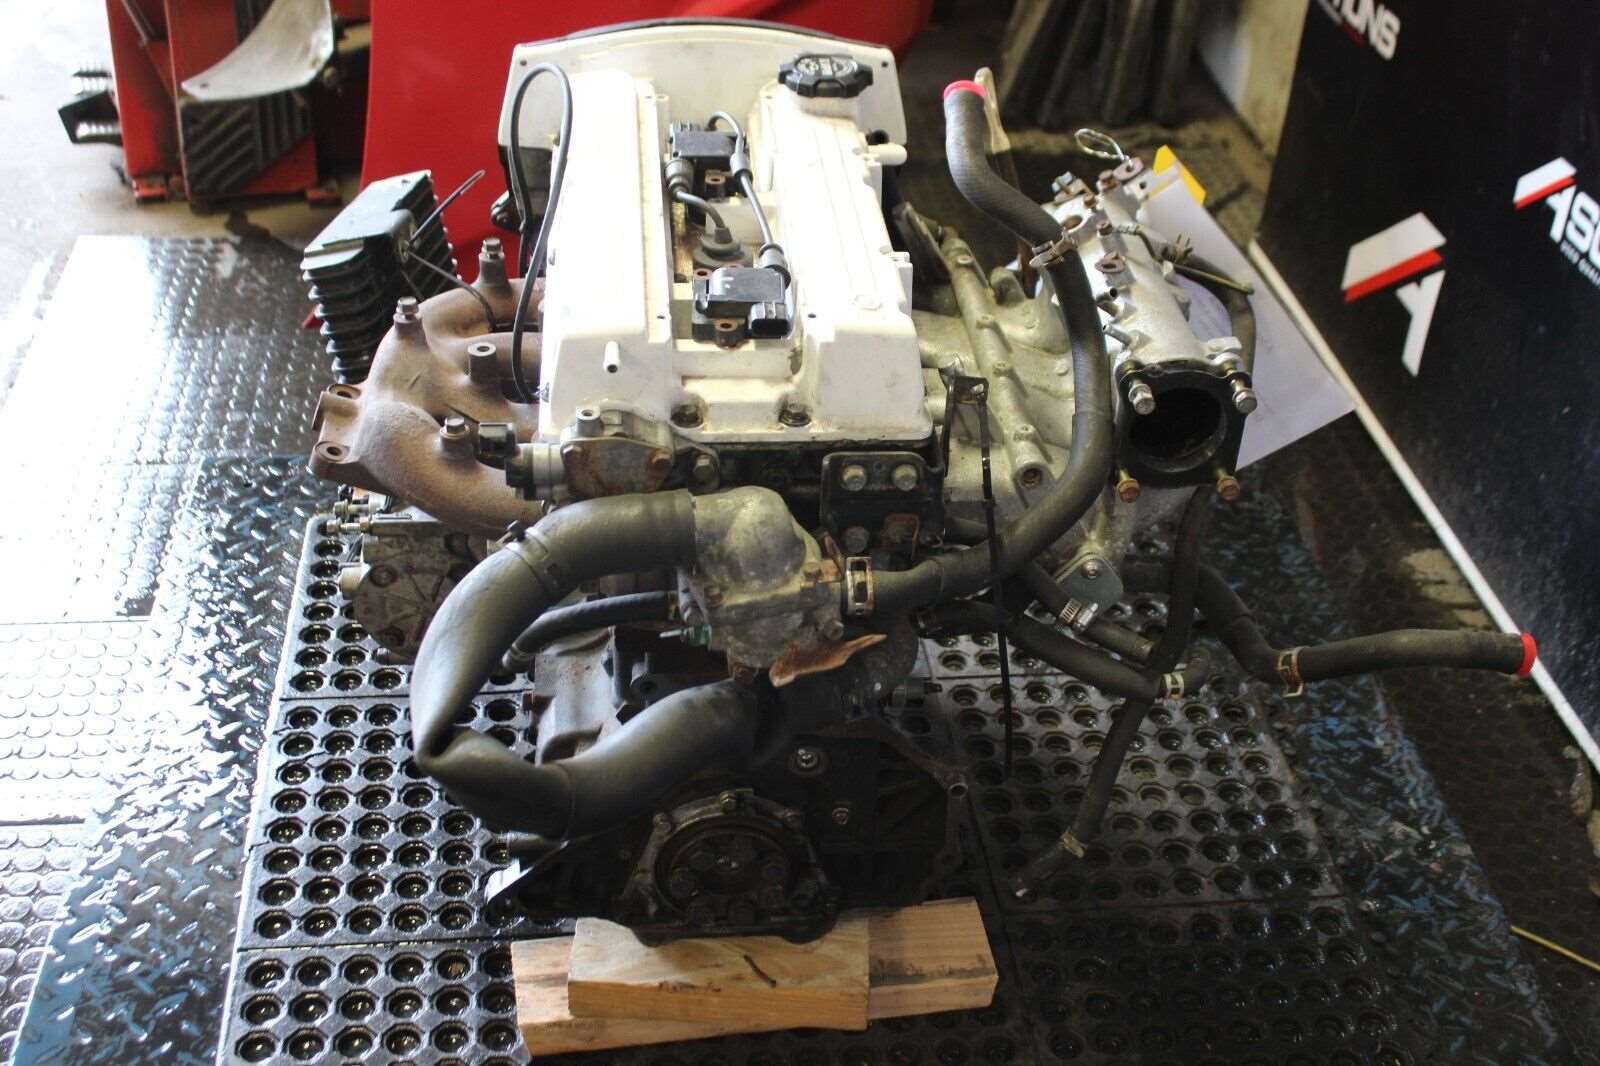 2003-2005 Mitsubishi Lancer Evolution 8 Engine Motor 4G63T 2.0L Built Head 4G63